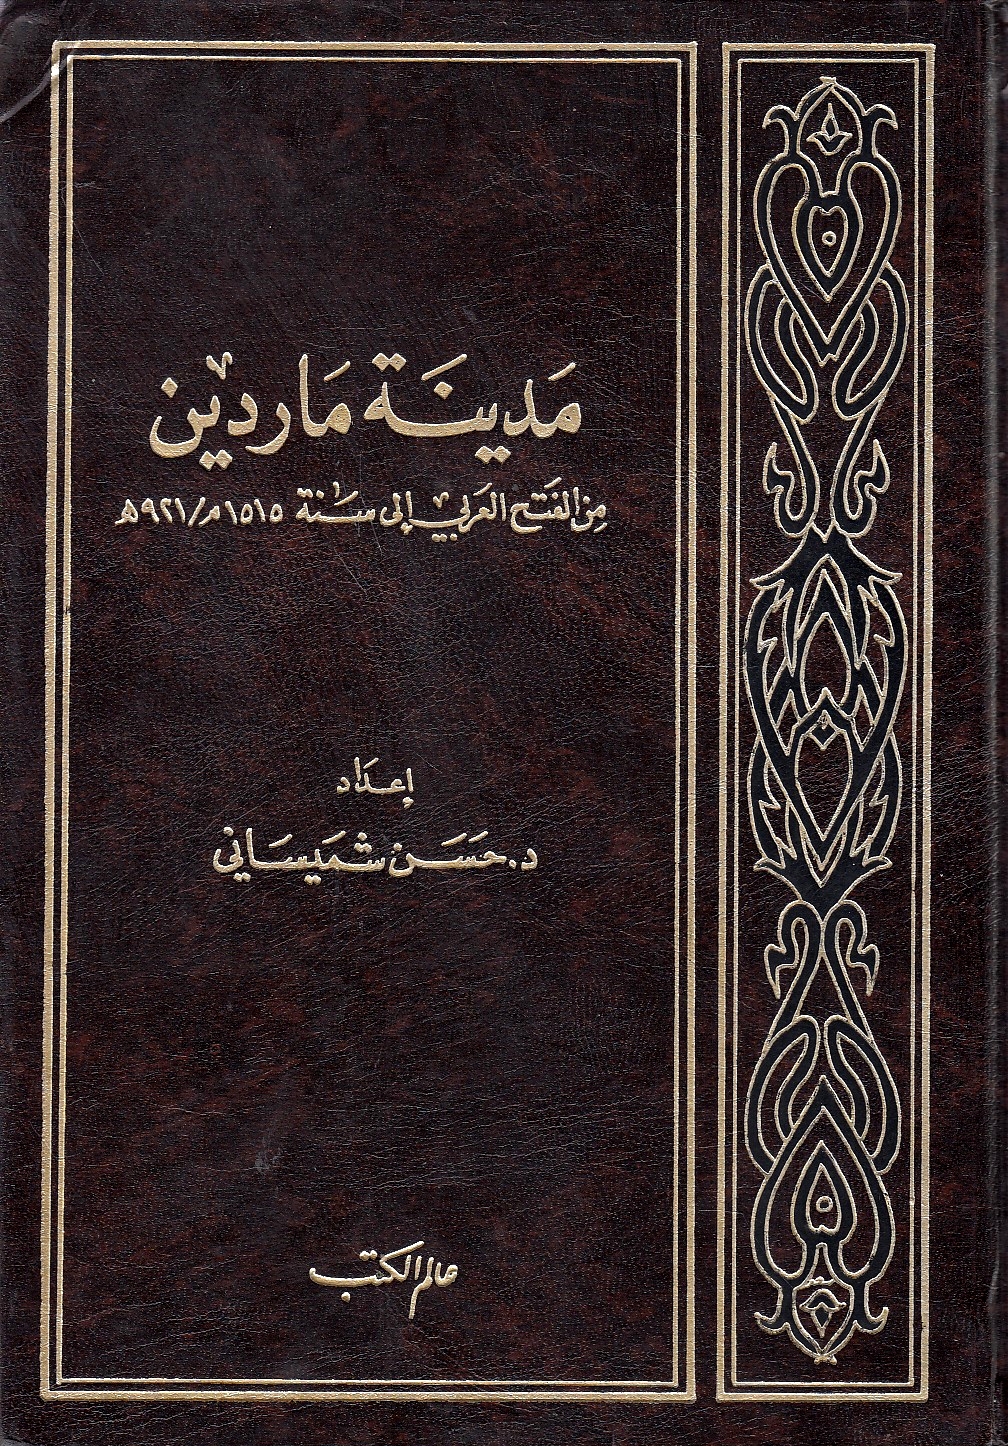 Madinat Mardin min al-fath al-'arabi ila sanat 1515 M/ 921 H.